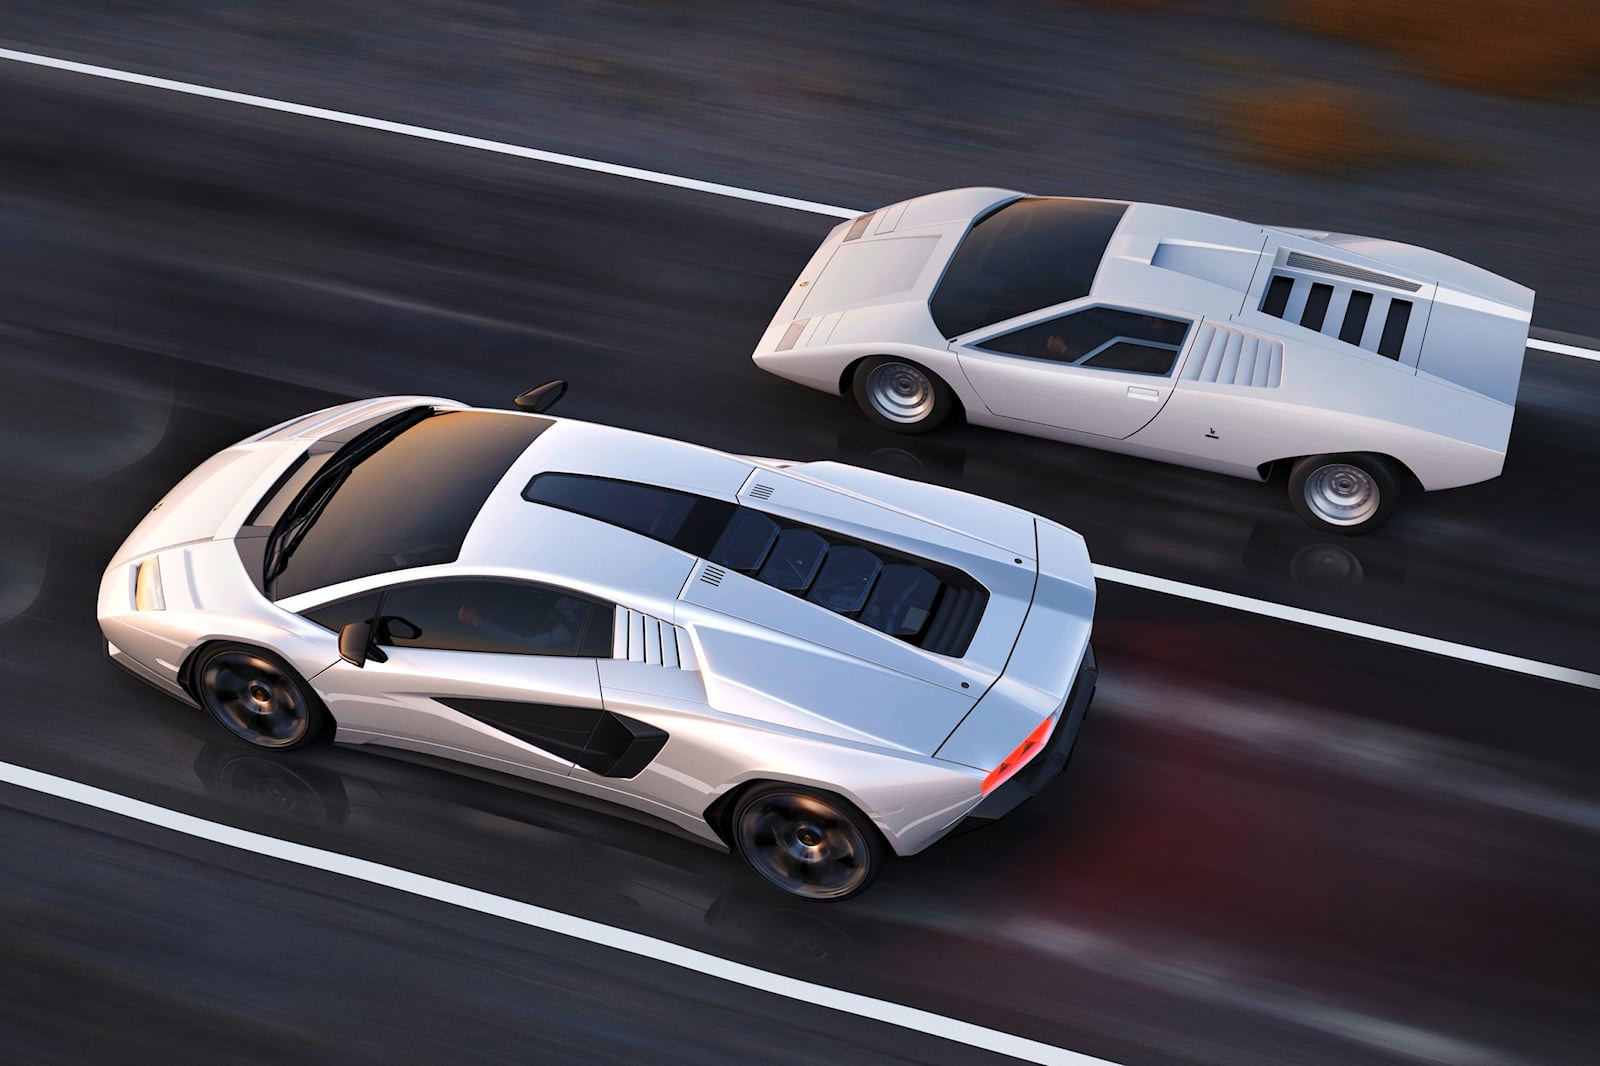 Lamborghini Countach вернулся в мир как современный суперкар с двигателем V12 в 2021 году, а поставки клиентам начались в начале этого года. Но теперь эти счастливые американские владельцы — все девять из них — должны будут доставить свои автомобили 